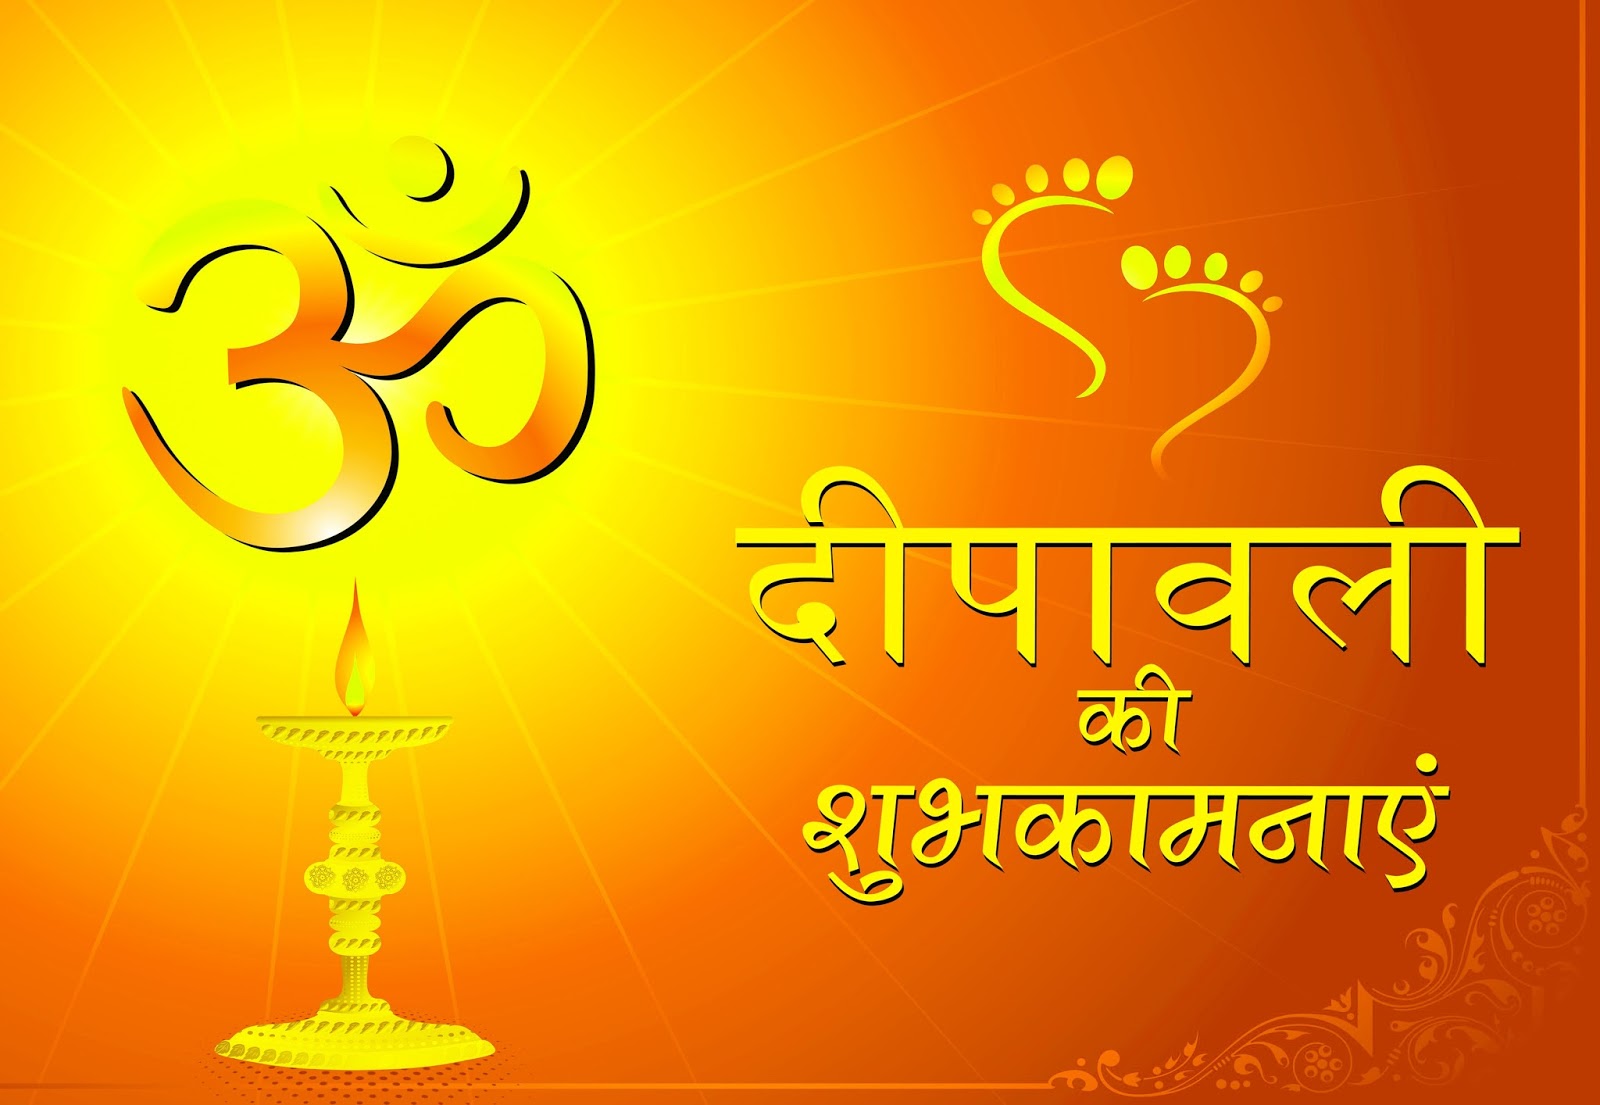  Happy Diwali Wishes 2021: दिवाली के मौके पर अपनों को करें खास अंदाज में विश, भेजें ये शुभकामना संदे